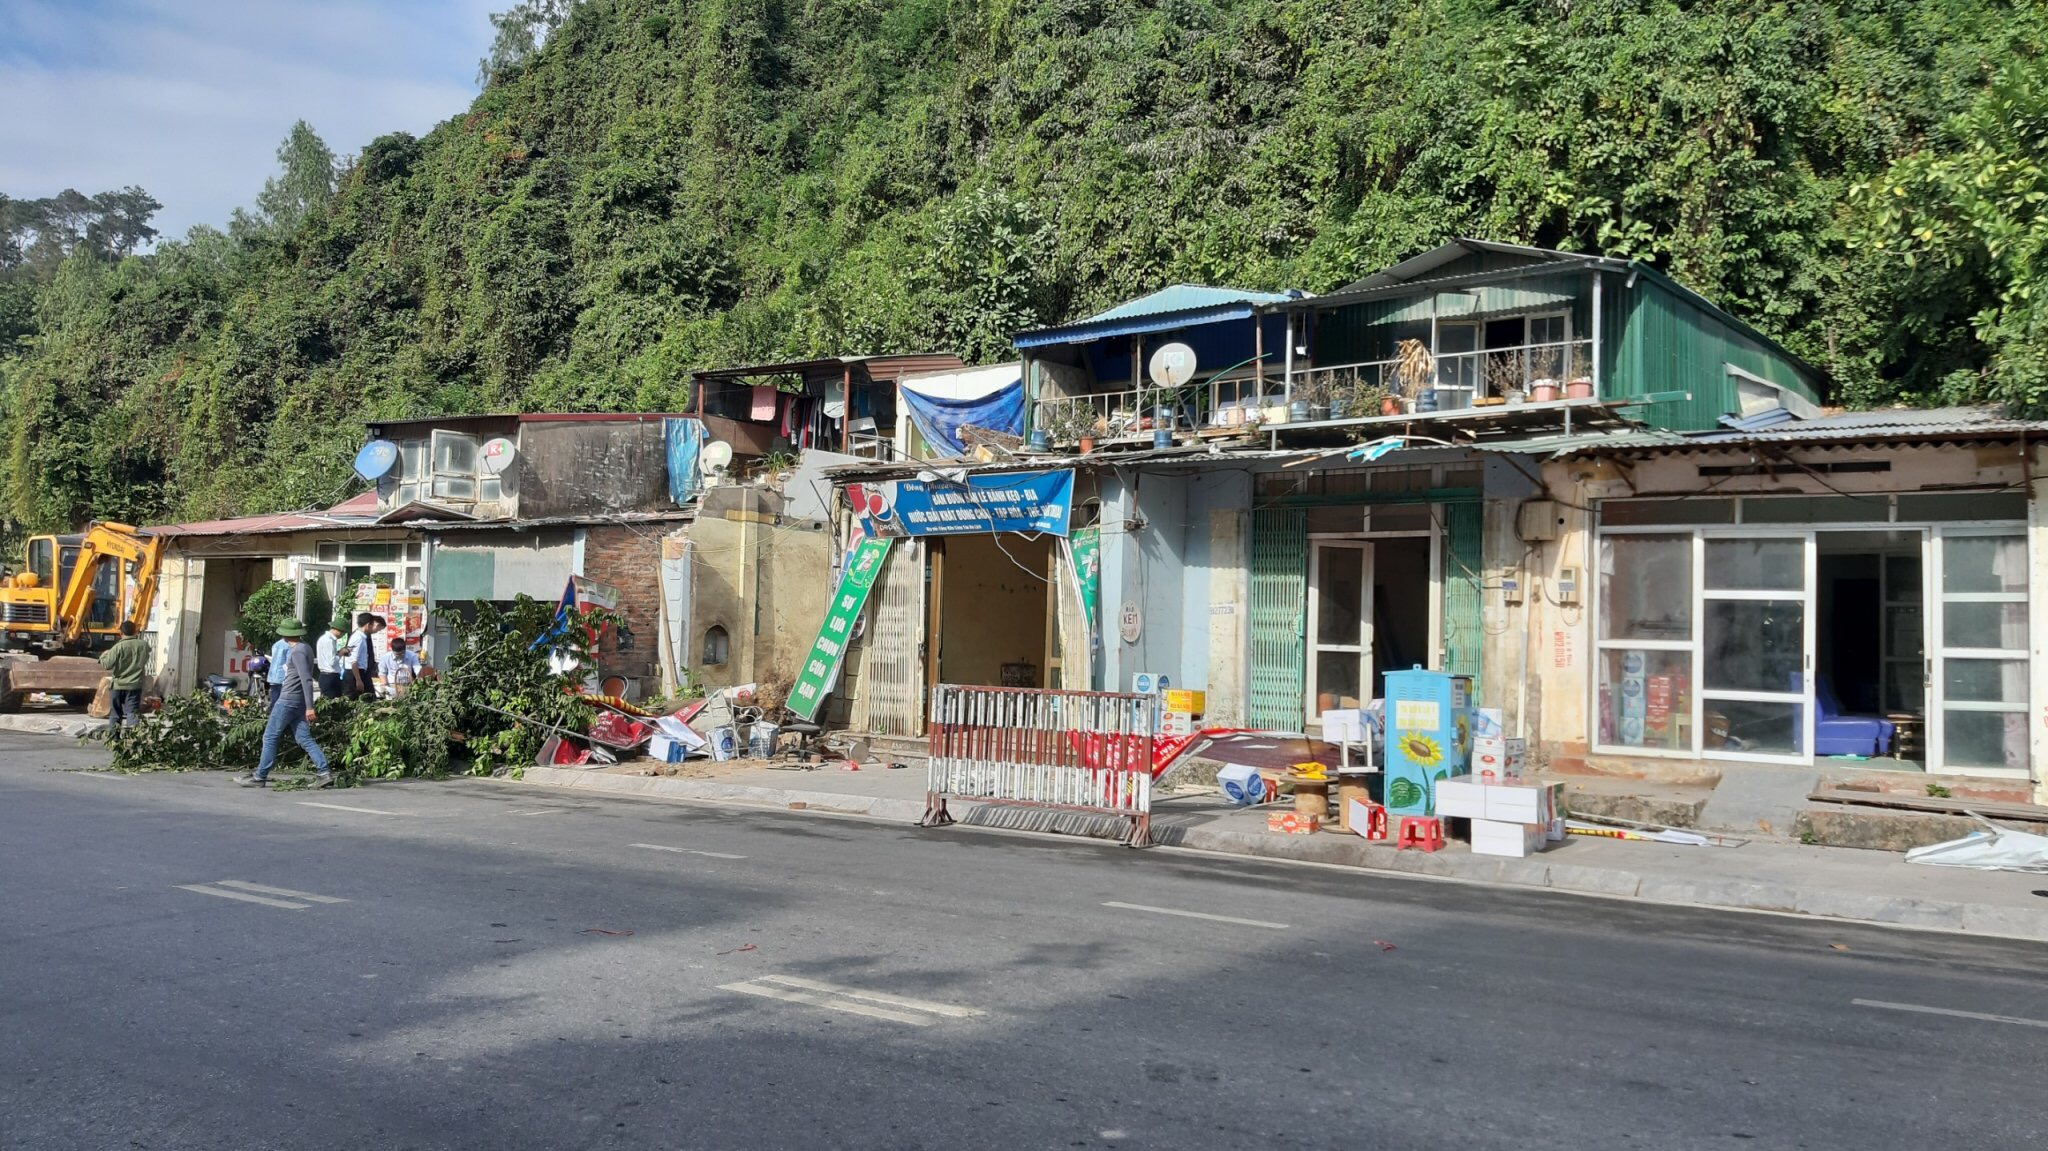 UBND TP Hạ Long tổ chức cưỡng chế để GPMB đối với 7 hộ dân, trong đó có hộ ông Vũ Tùng Giang, ngày 16/12/2019.